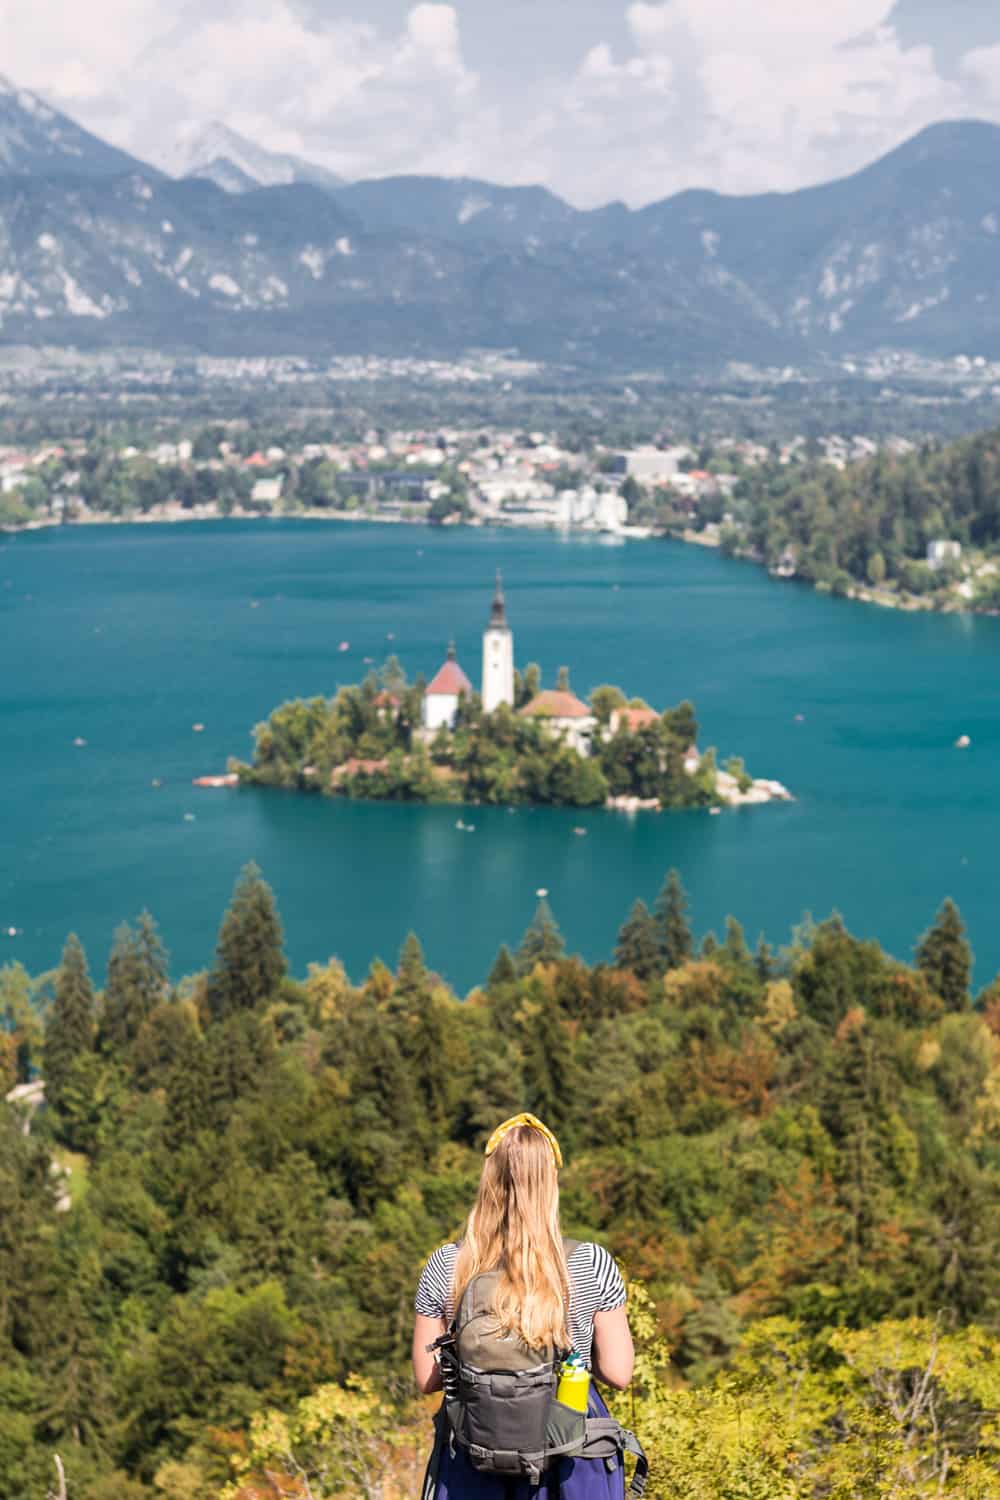 Manouk kijkt uit over het meer van Bled met het eilandje in het midden